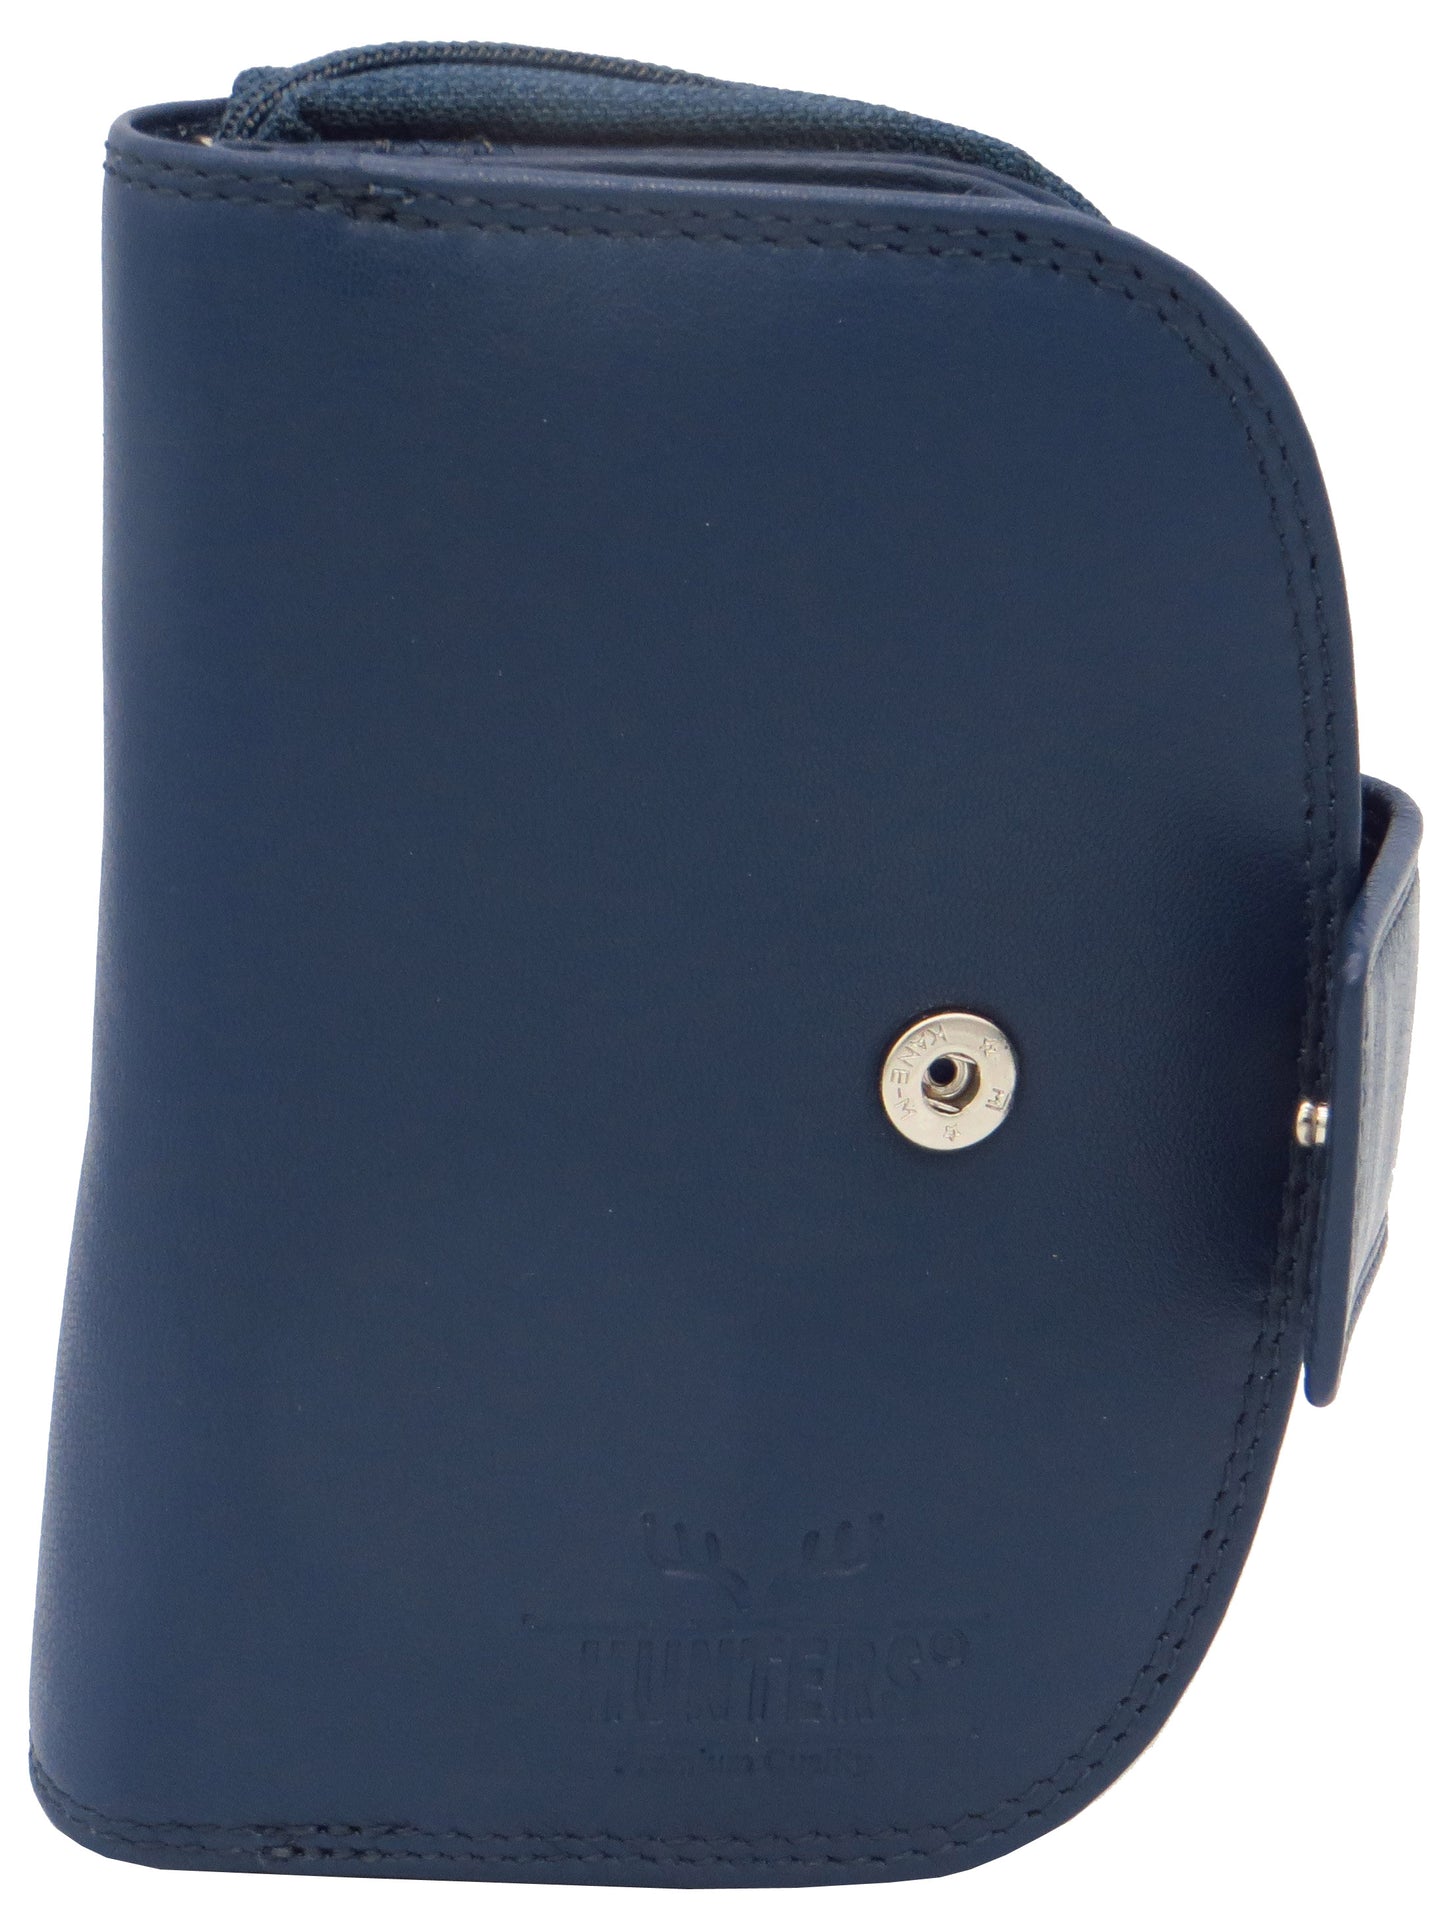 Geldbörse Portemonnaie für Damen blau Rindsleder mit RFID Schutz LW009